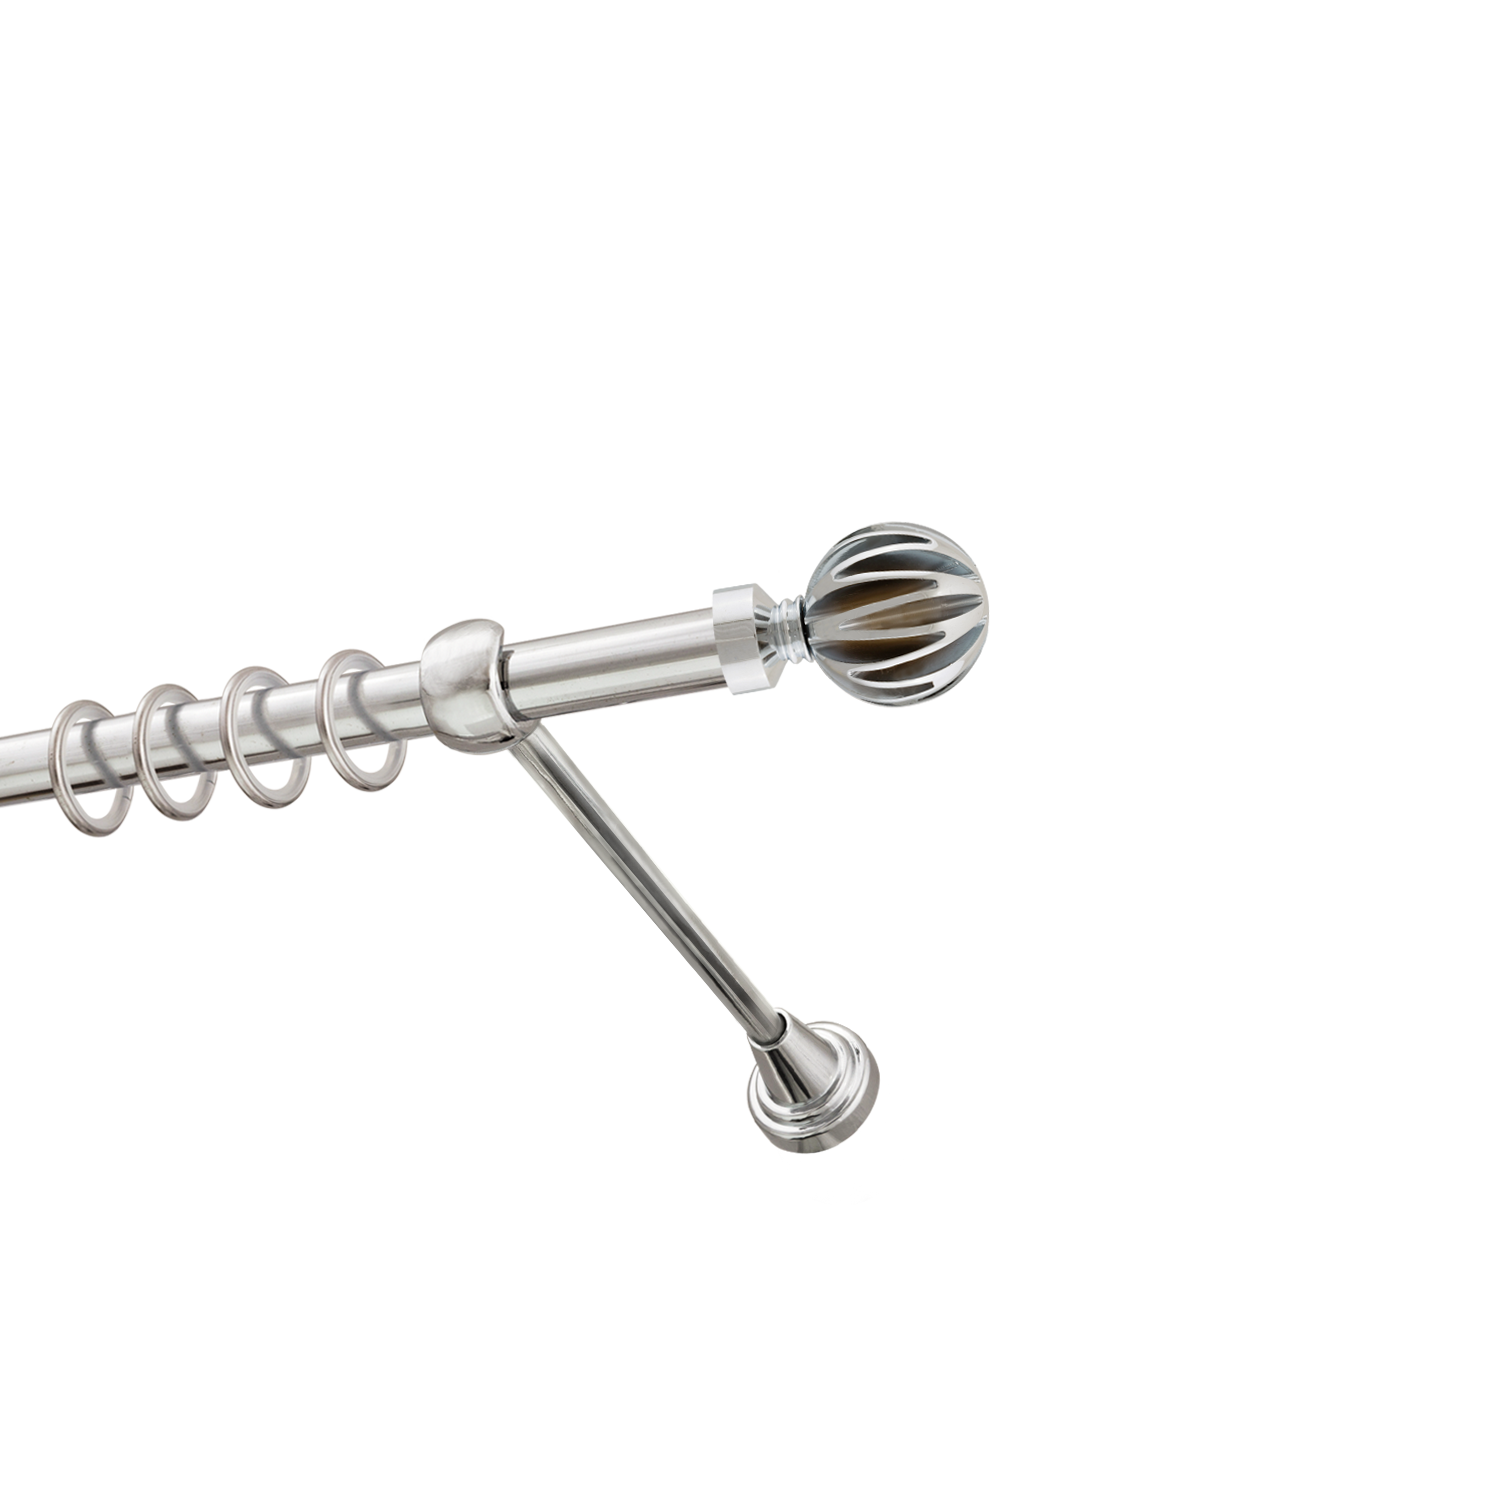 Металлический карниз для штор Шафран, однорядный 16 мм, серебро, гладкая штанга, длина 160 см - фото Wikidecor.ru